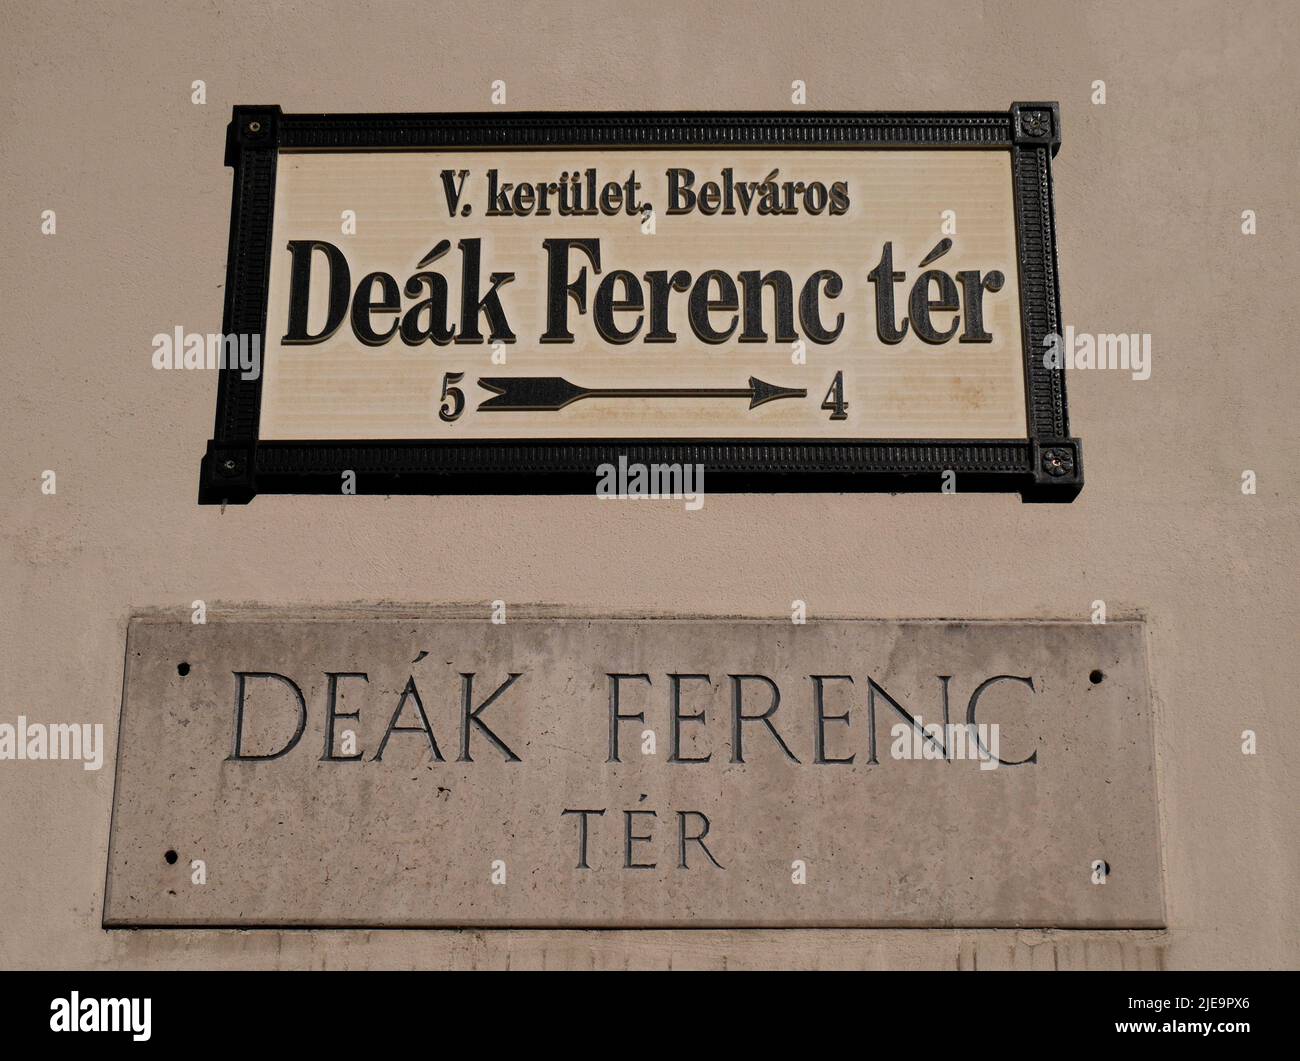 Panneau de rue, panneau de route, Deak Ferenc ter, Budapest, Hongrie Banque D'Images